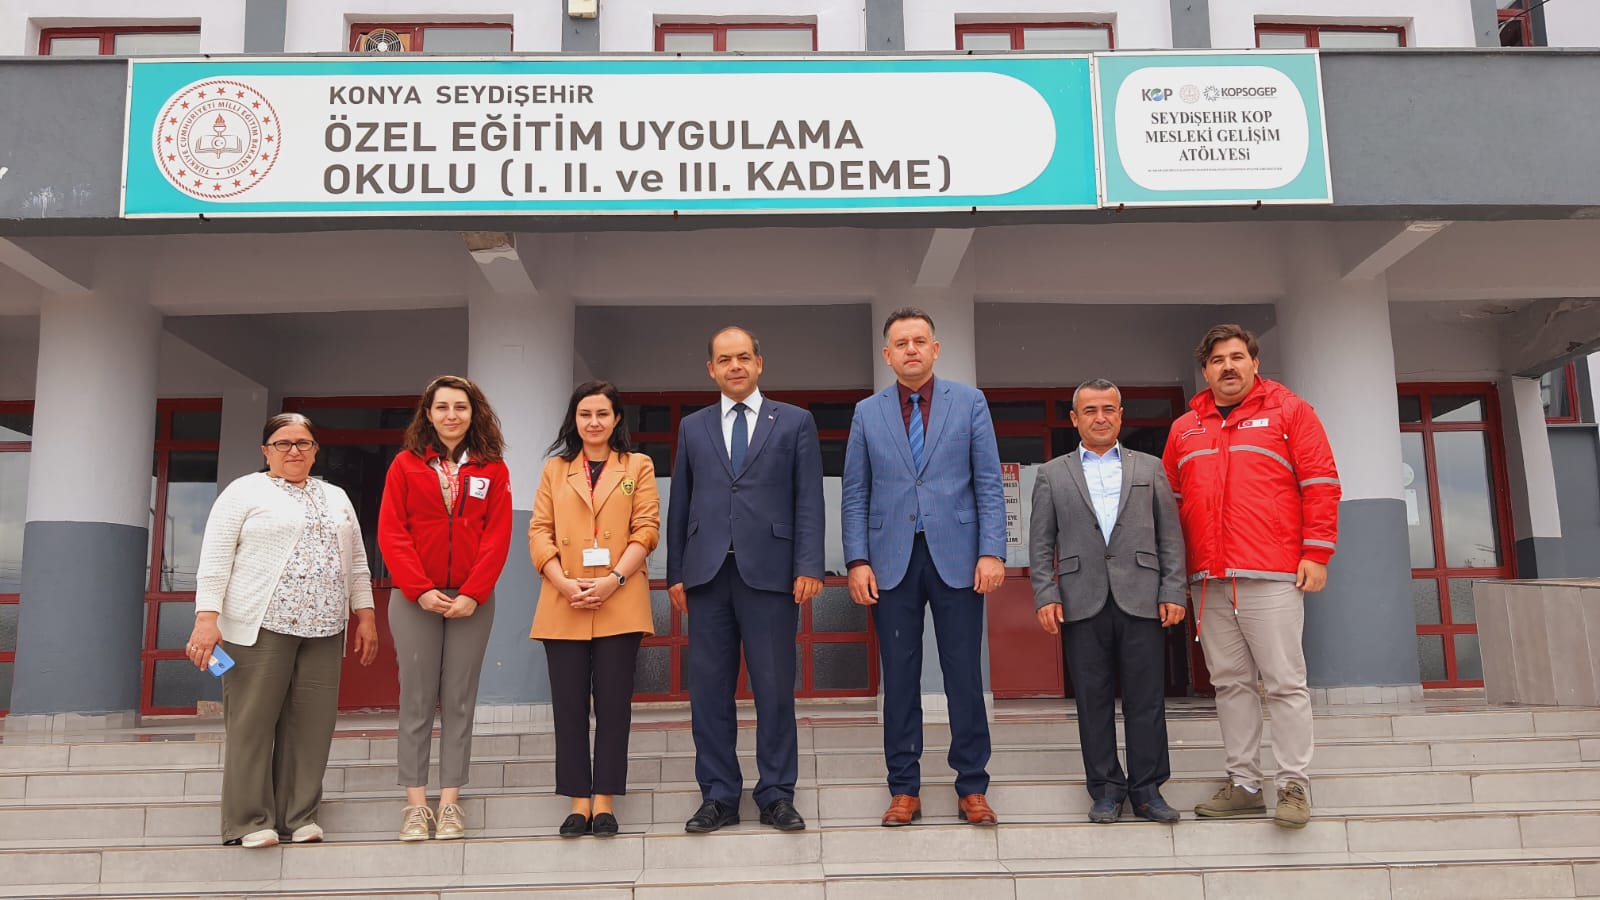 Türk Kızılay Konya Toplum Merkezinden Seydişehir Özel eğitime Destek